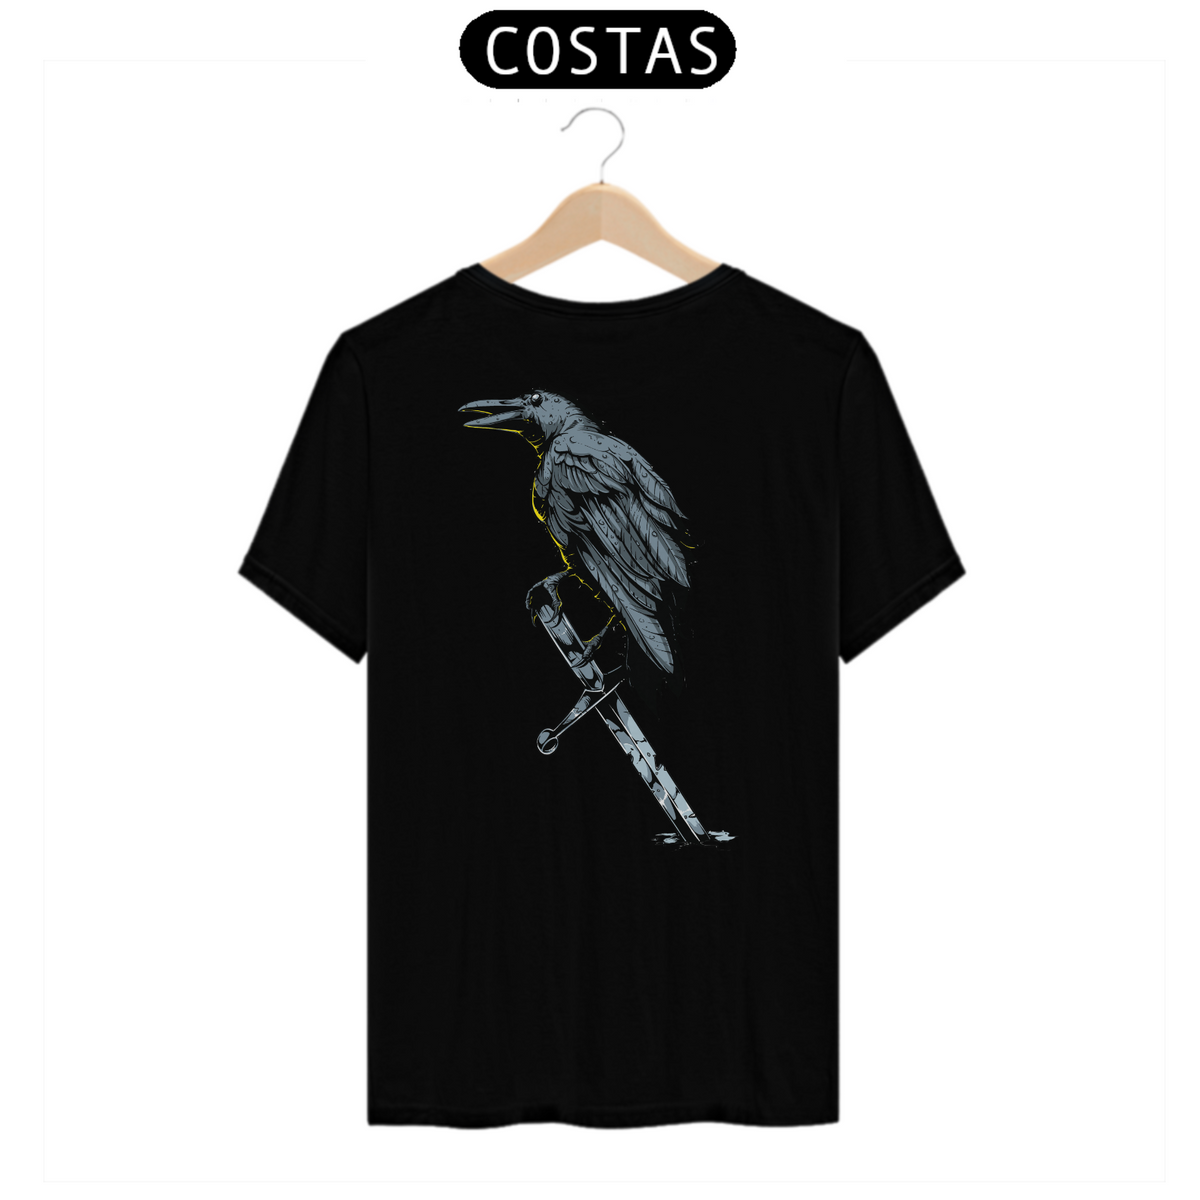 Nome do produto: Camiseta o Corvo